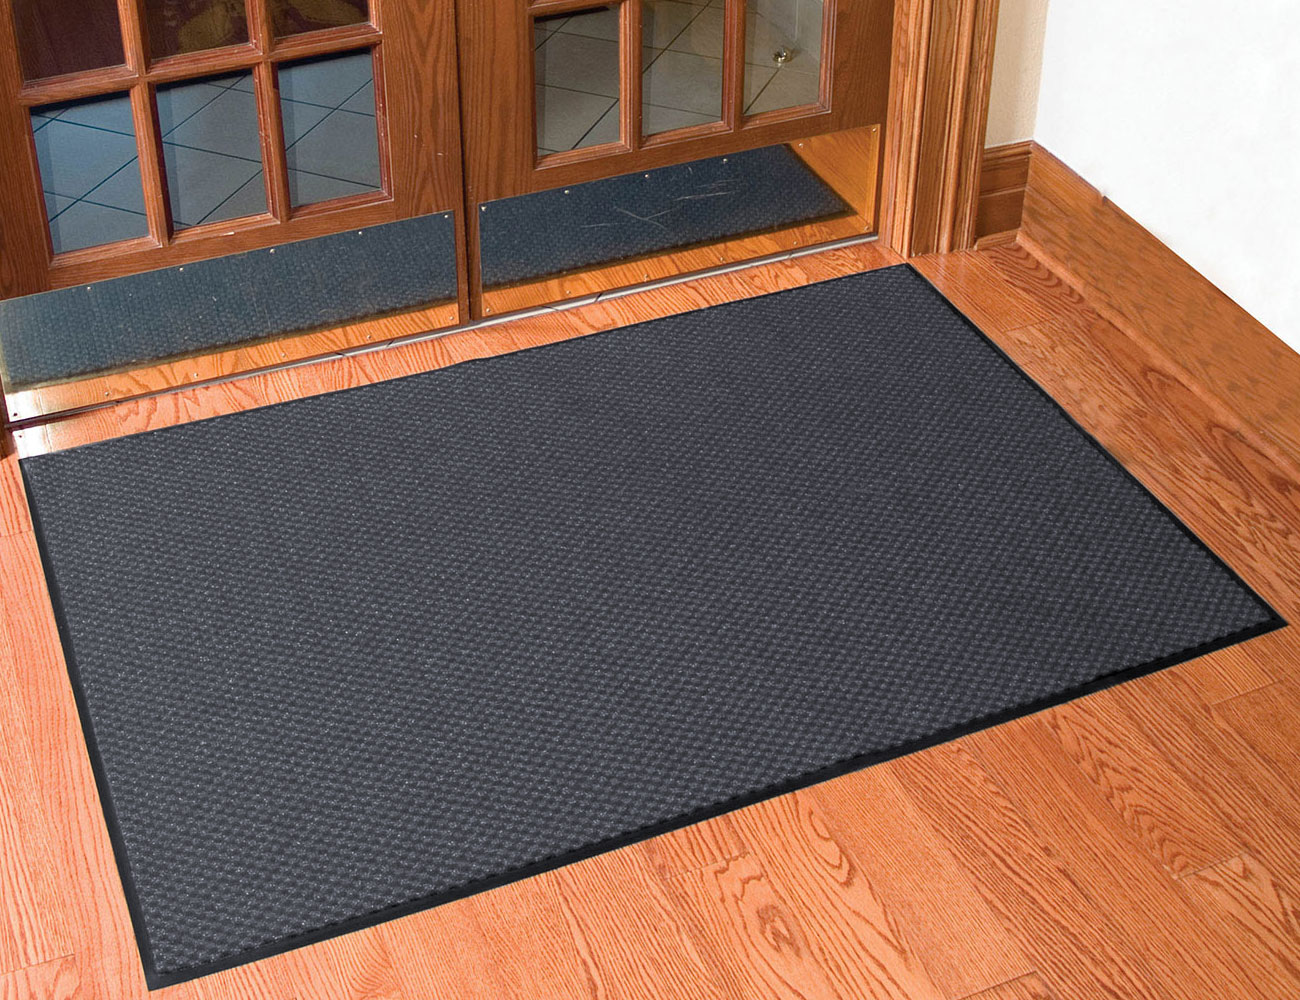 dining room floor mats